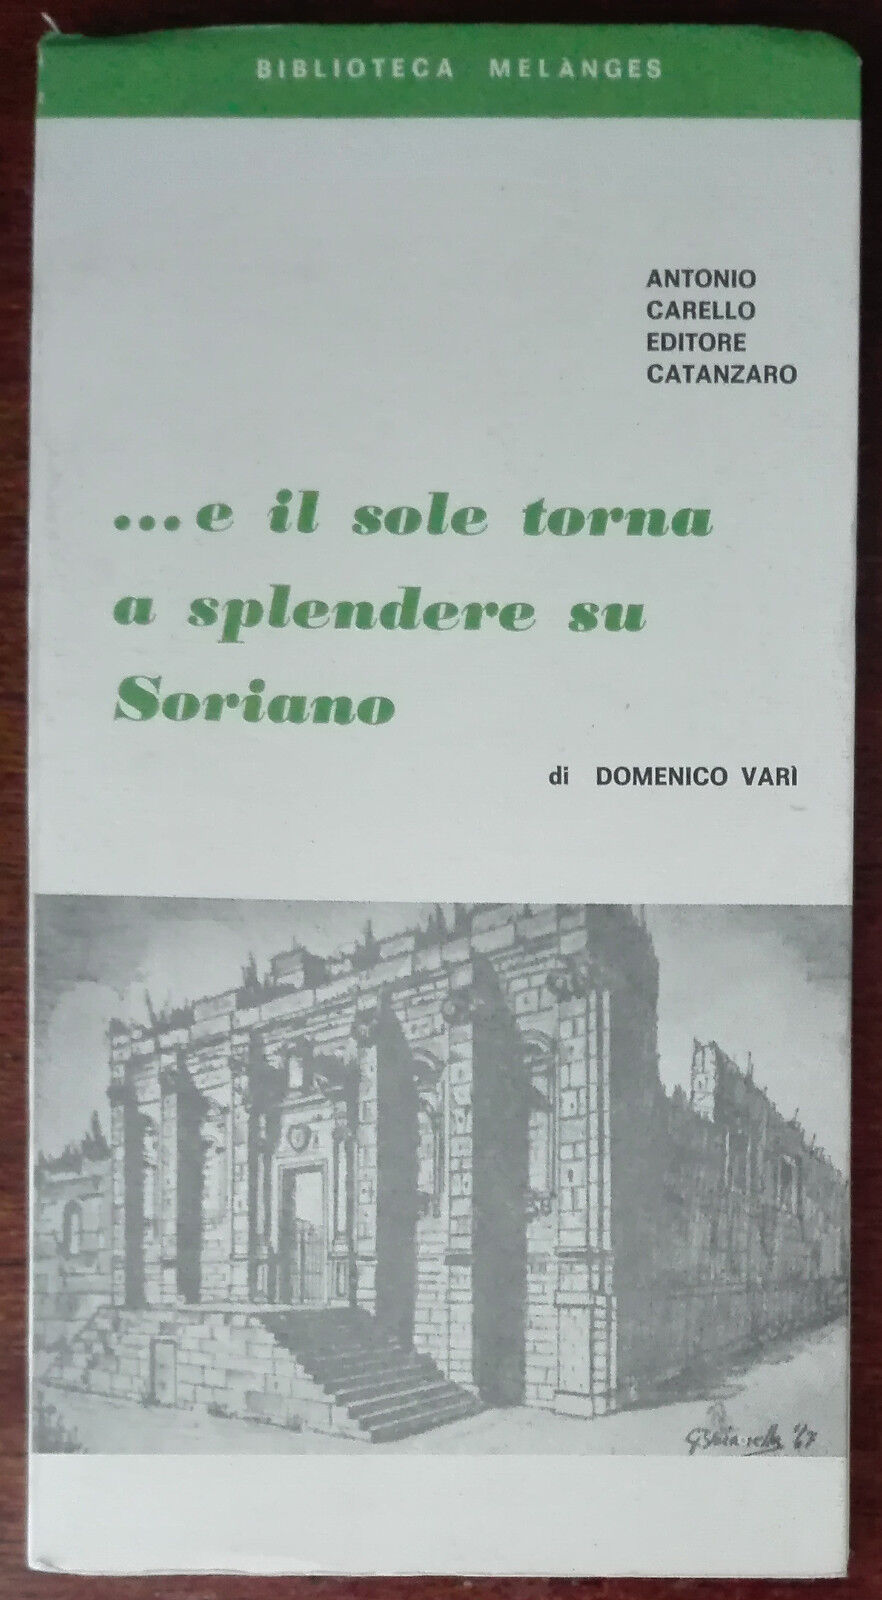 ...e il sole torna a splendere su Soriano - Antonio Carello - Catanzaro,1992 - A